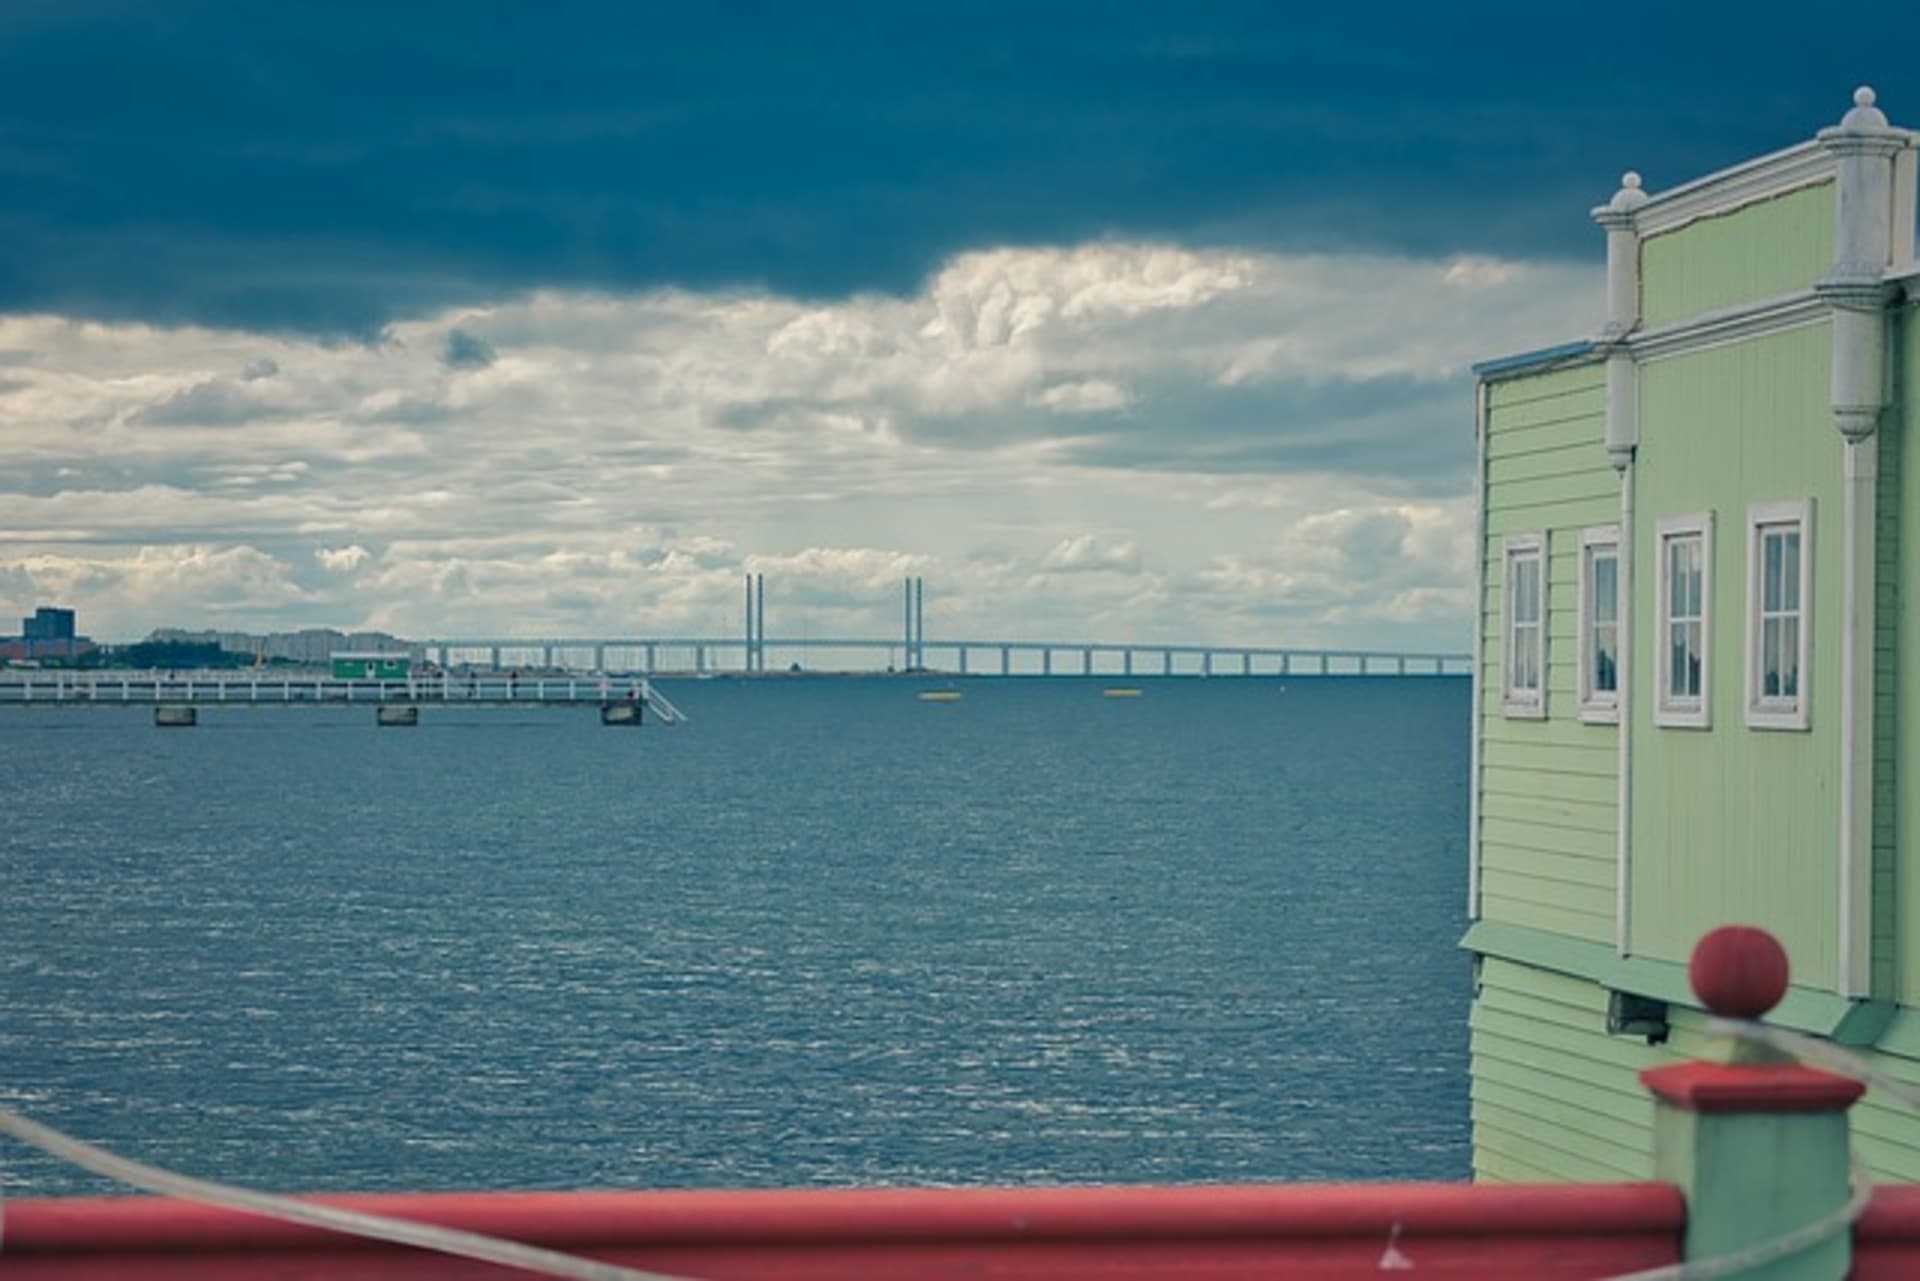 Öresundský most spojující Švédsko a Dánsko